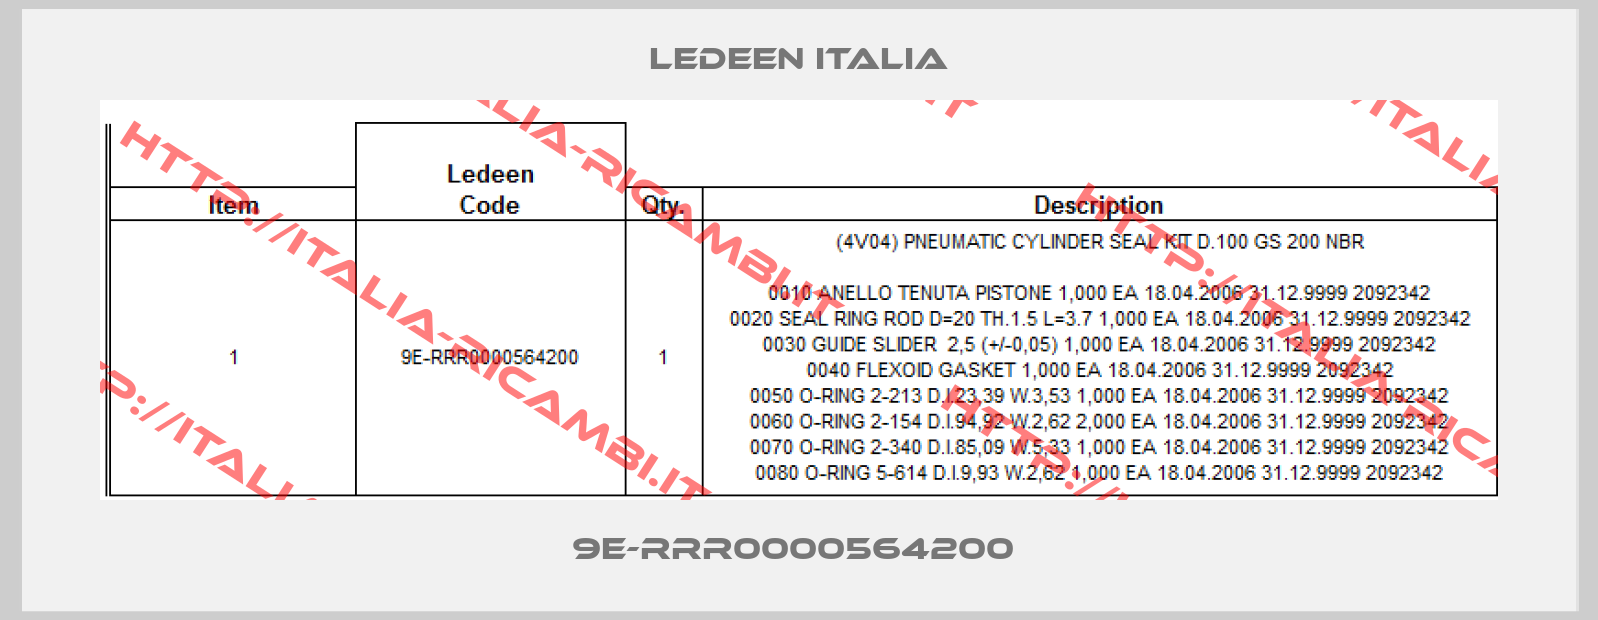 LEDEEN ITALIA-9E-RRR0000564200 